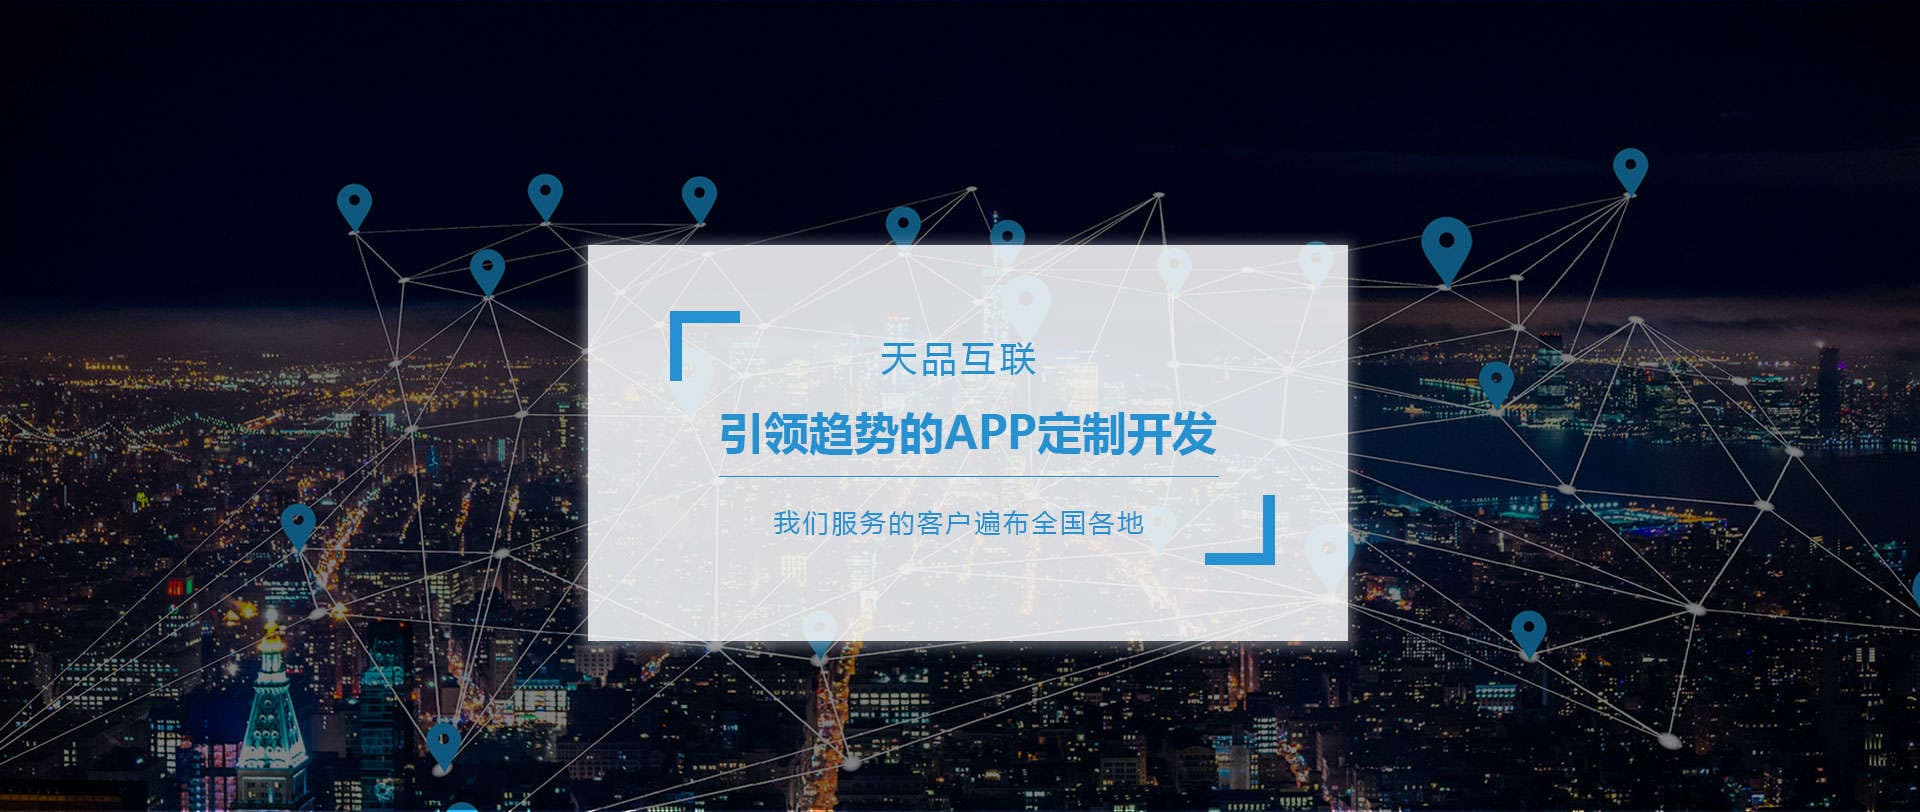 北京APP开发公司轮播图-2